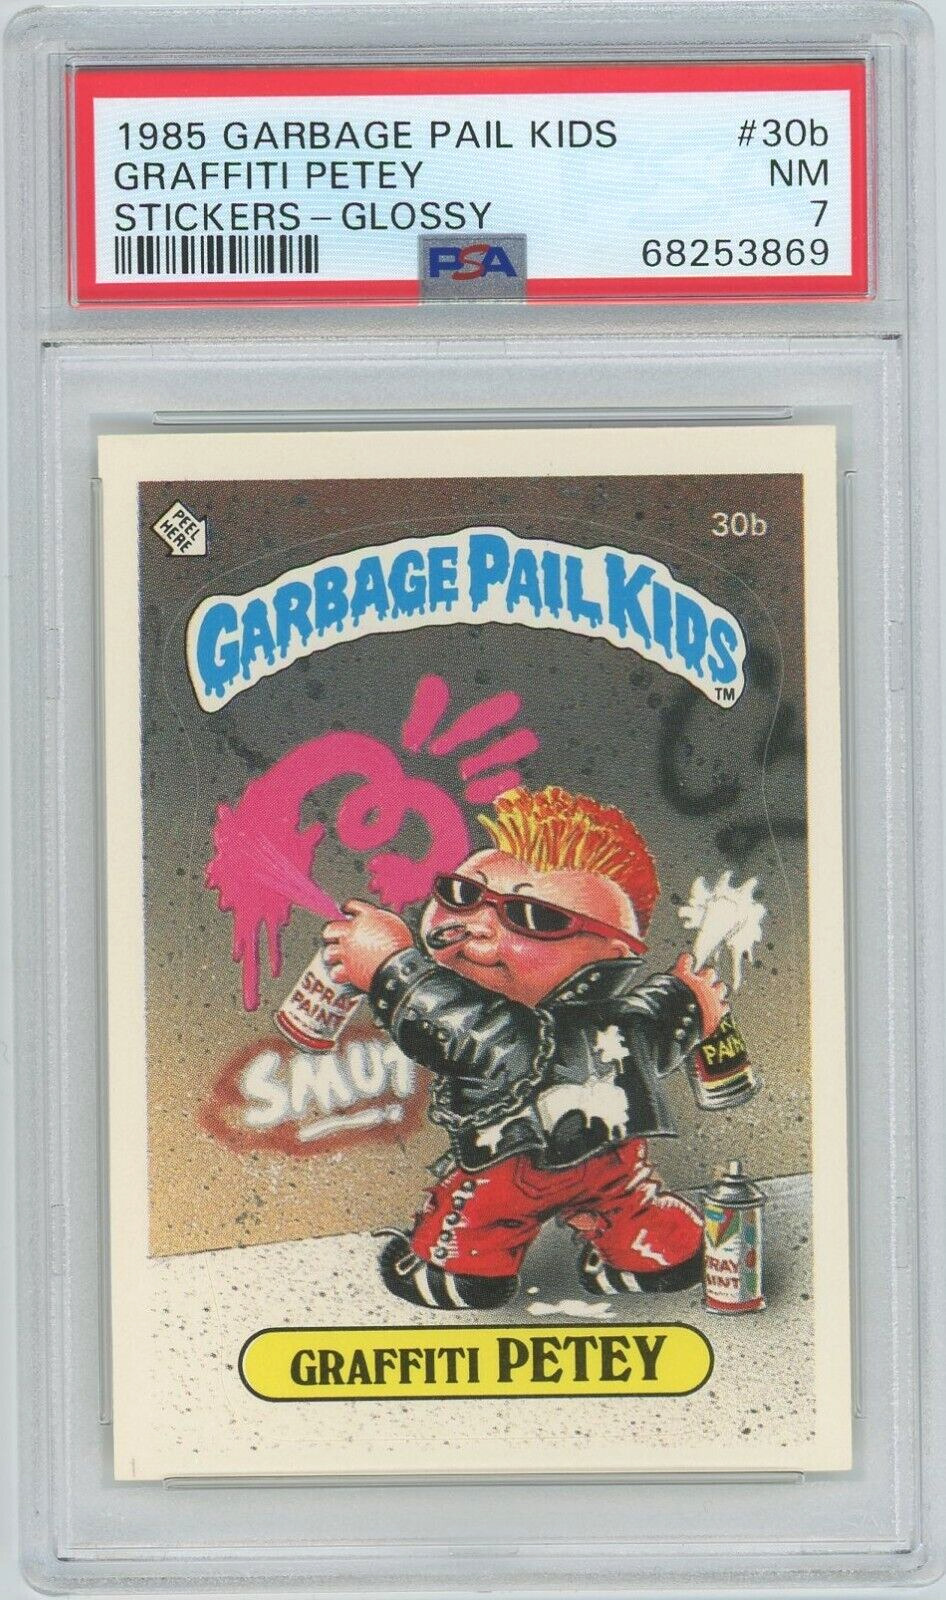 1985 Topps OS1 Garbage Pail Kids Series 1 GRAFFITI PETEY 30b GLOSSY Card PSA 7